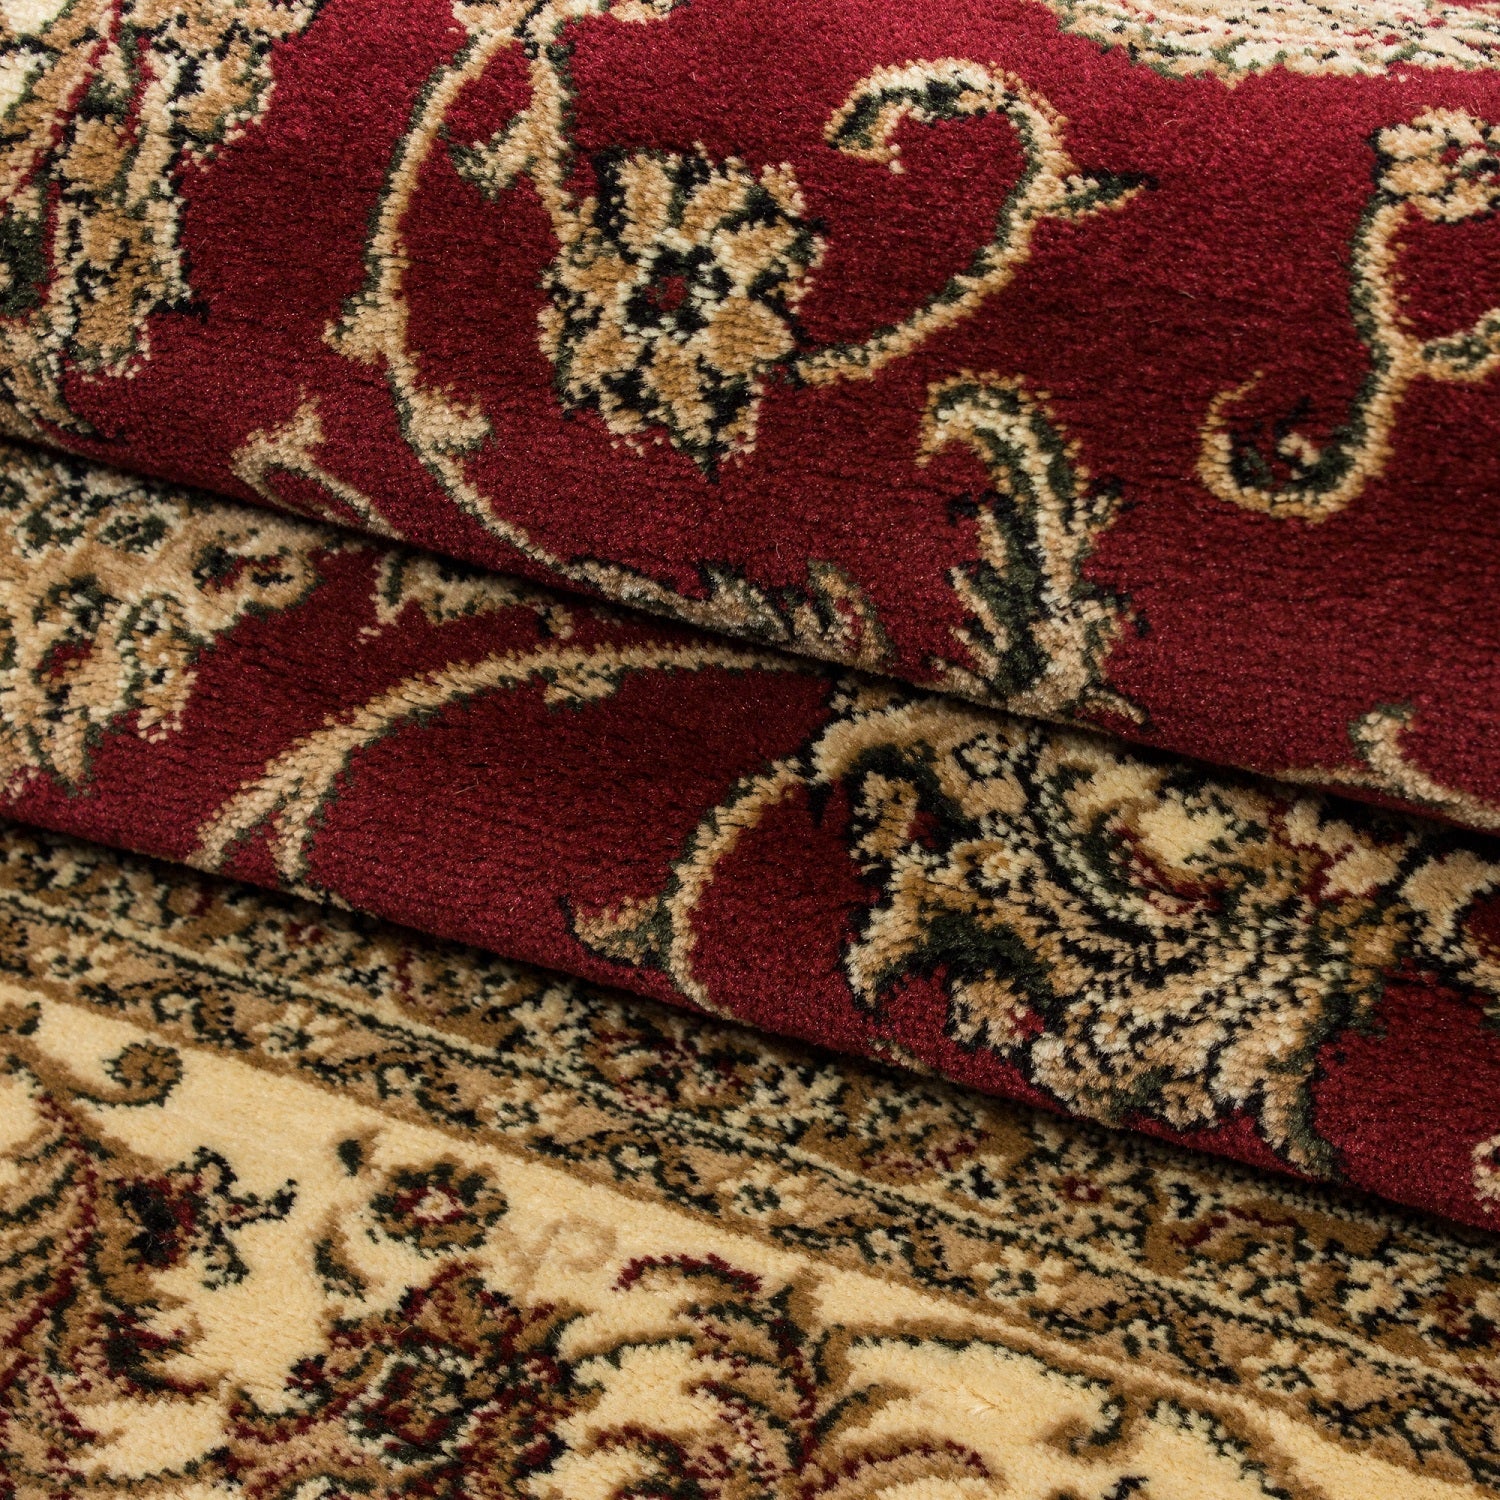 Klassik Orient Teppich Edle Bordüre Traditionelle Wohnzimmerteppich Rot Beige